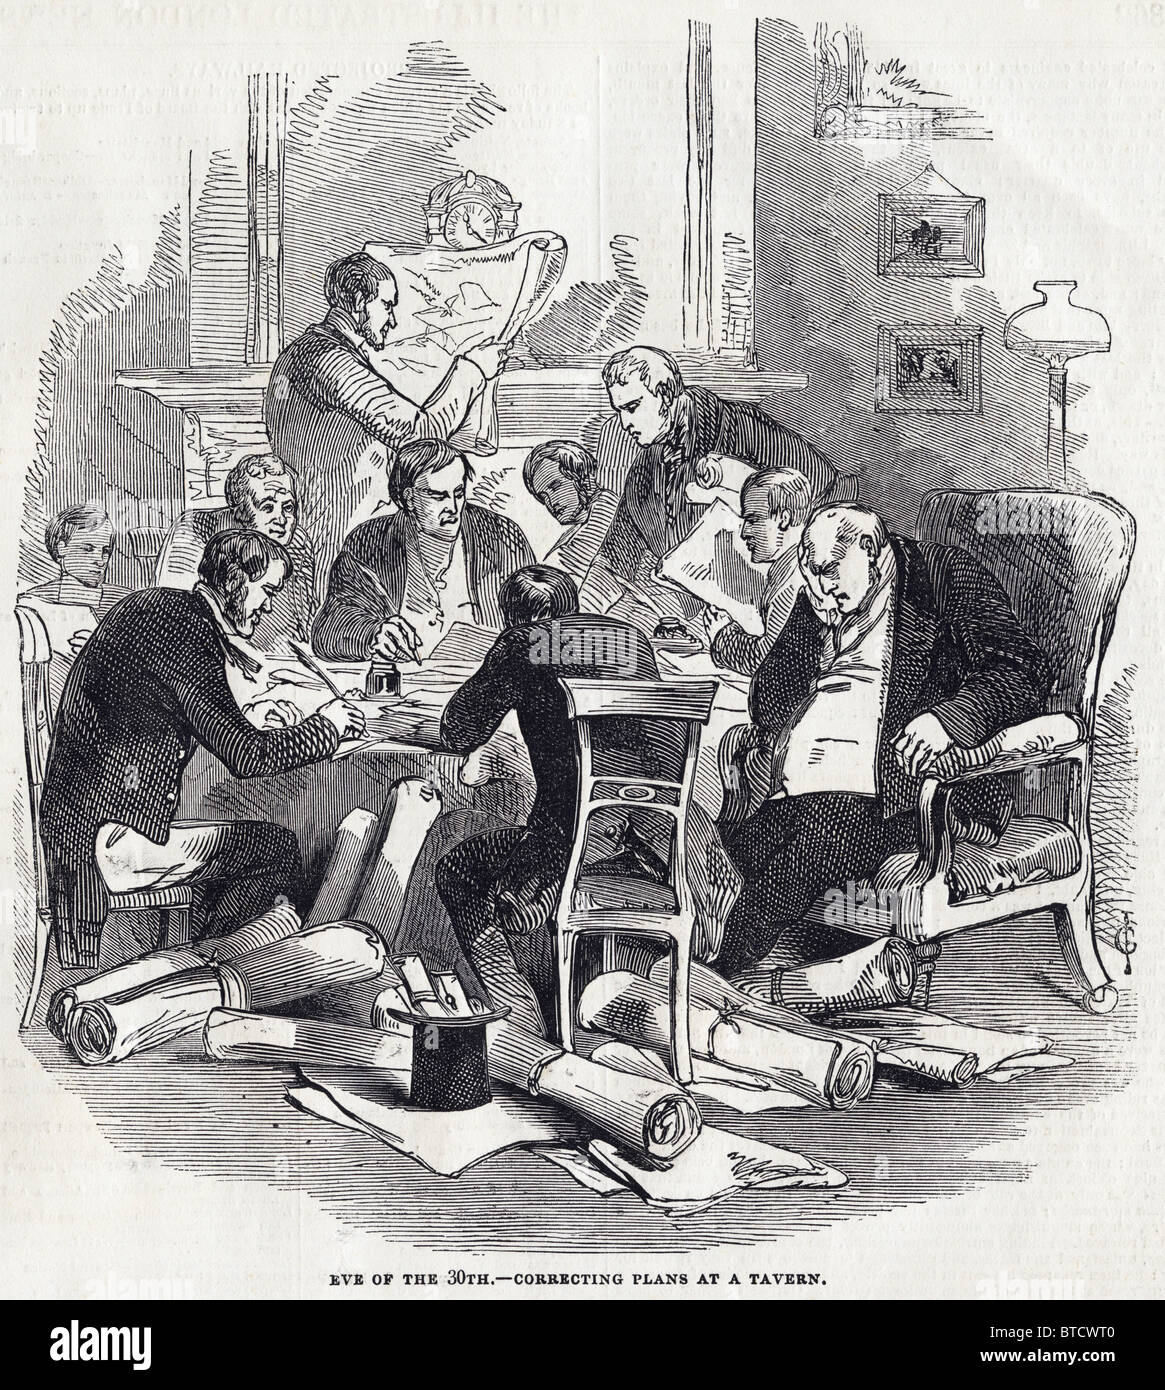 Les développeurs travaillant sur les plans de fer dans tavern sur eve 30 novembre 1845 avant de le livrer aux bureaux de la Chambre de commerce à Whitehall Banque D'Images